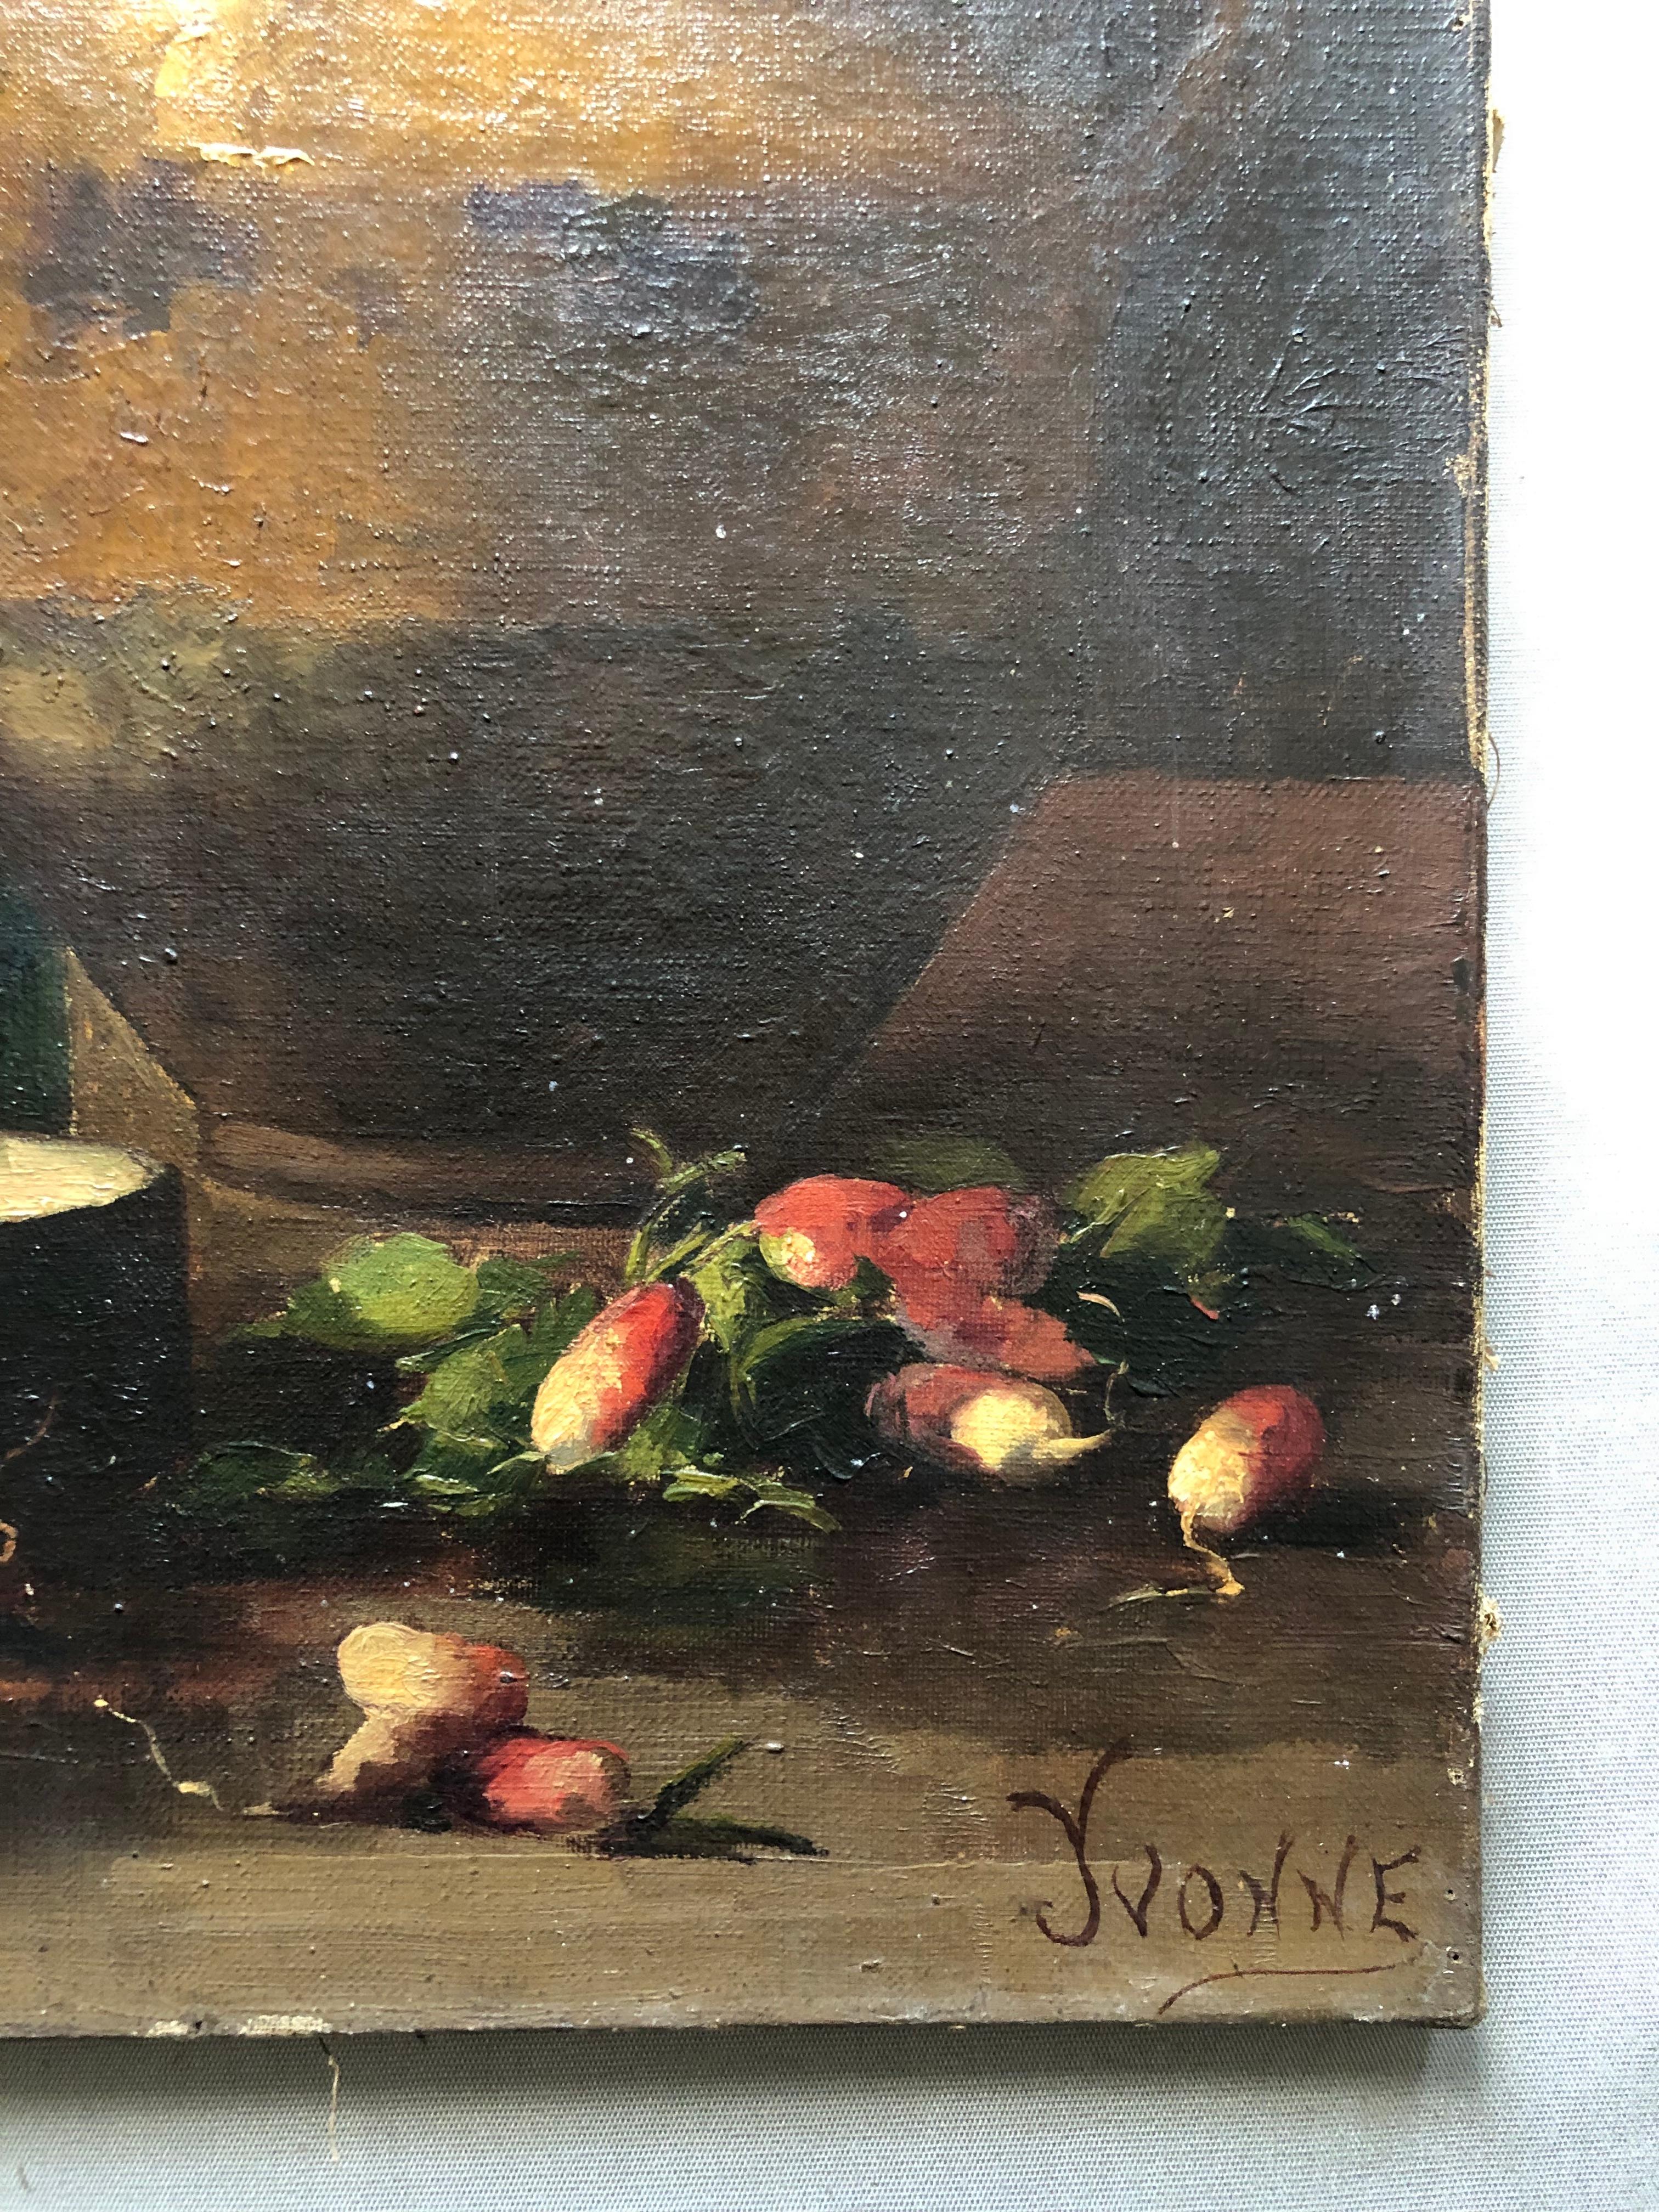 Stillleben mit Strahlen, Öl auf Leinwand, 19. Jahrhundert, signiert Yvonne 2